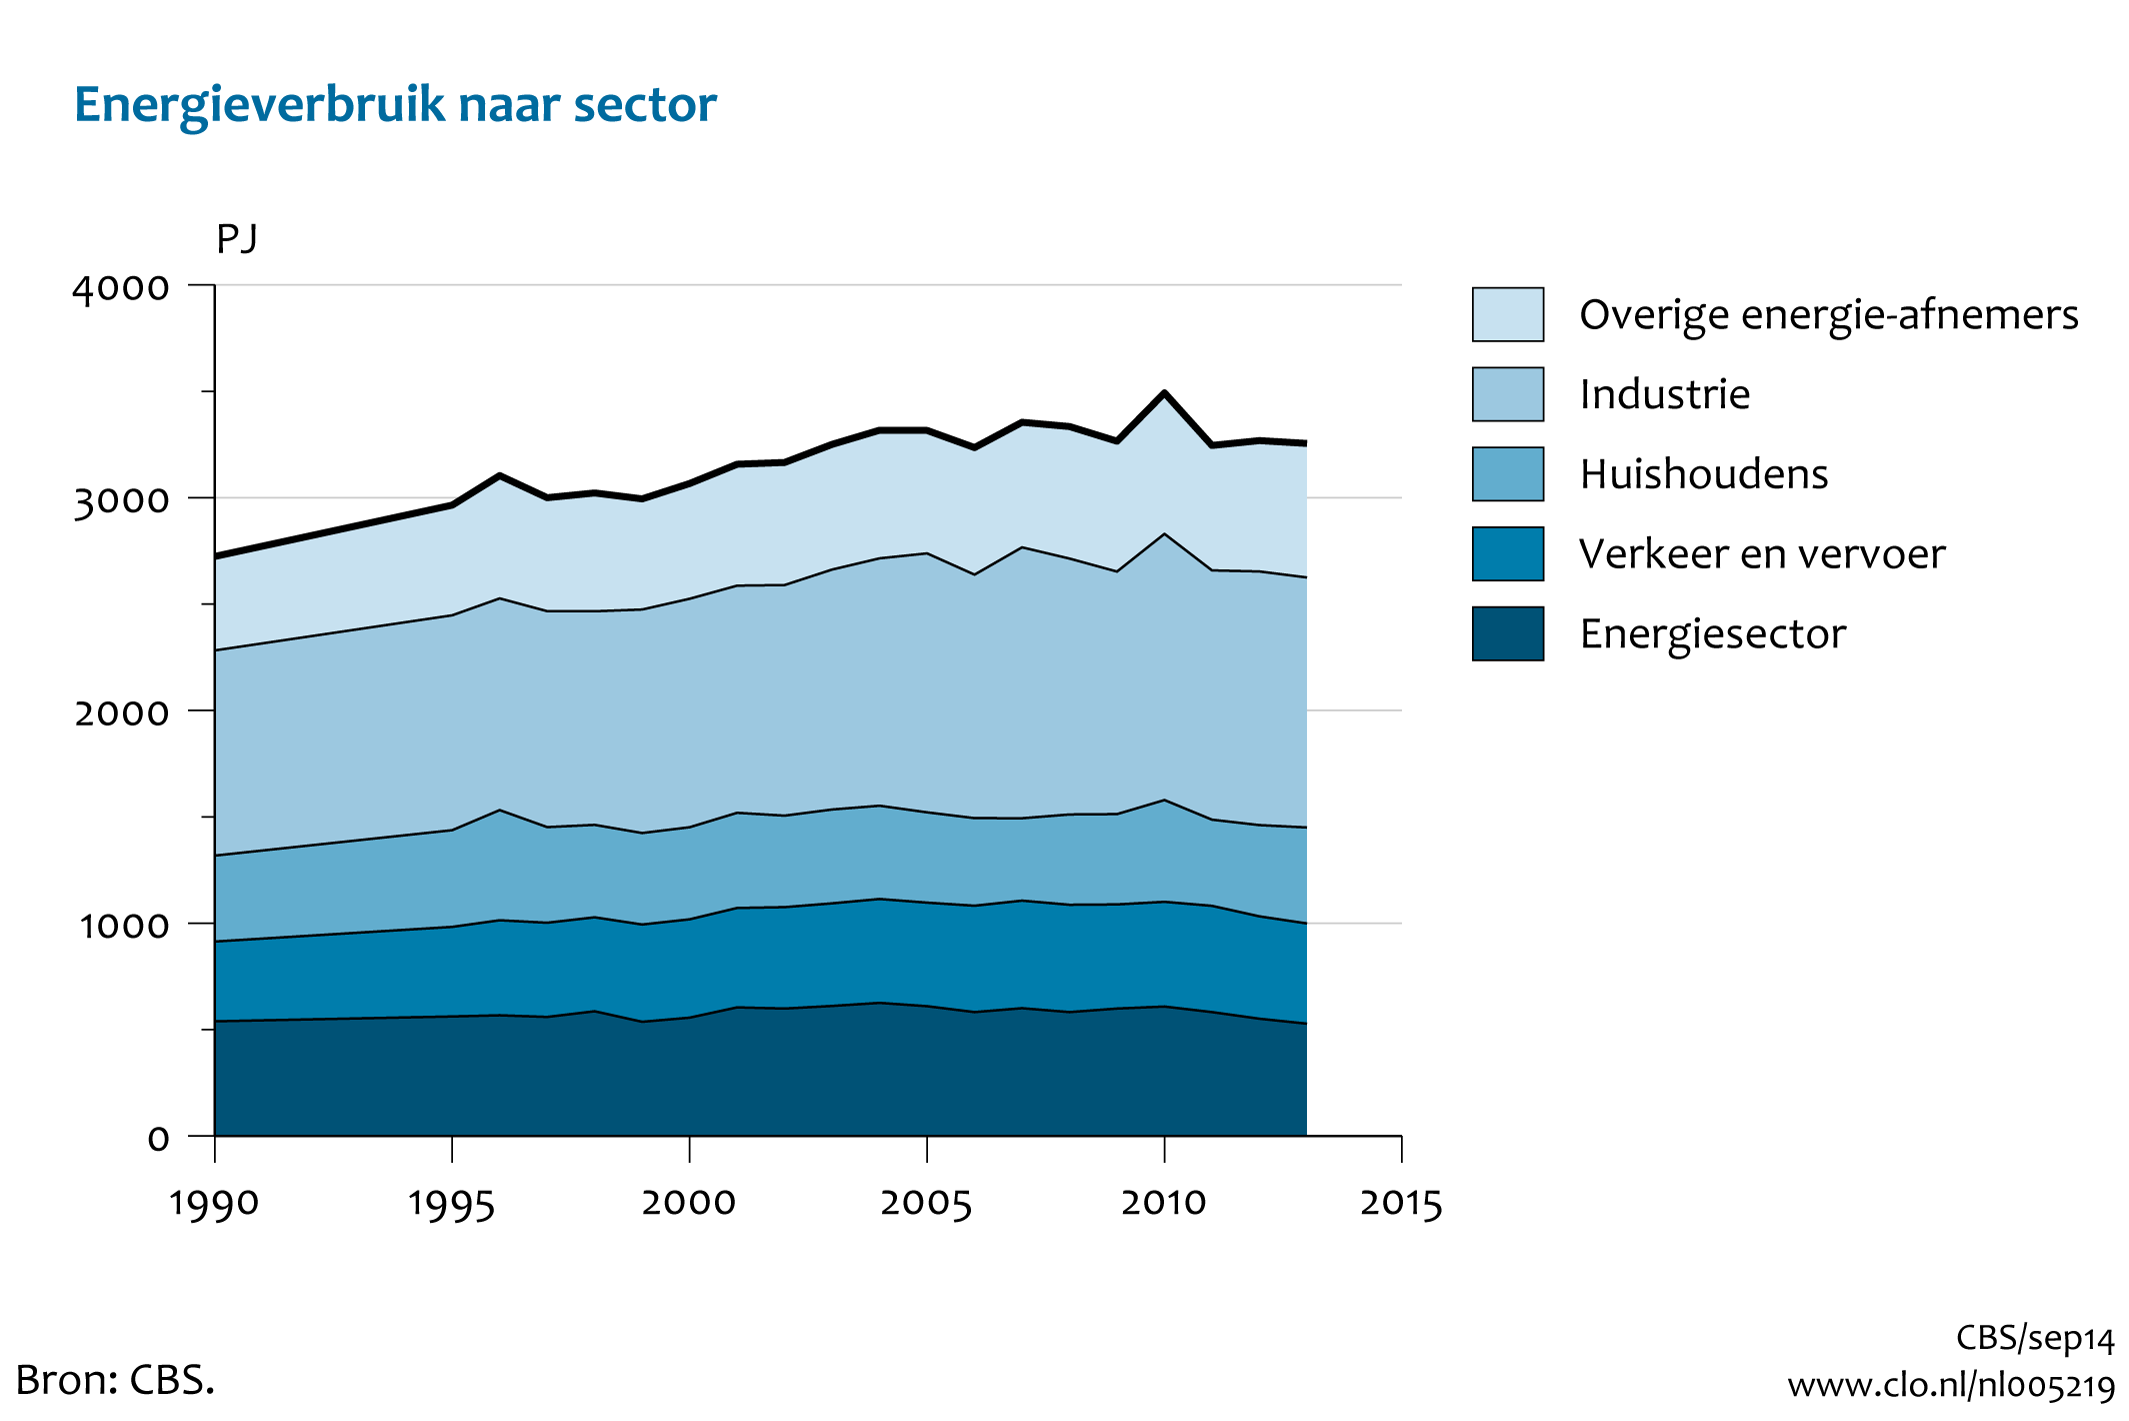 Figuur Tijdreeks 1990-2013 energieverbruik per sector. In de rest van de tekst wordt deze figuur uitgebreider uitgelegd.